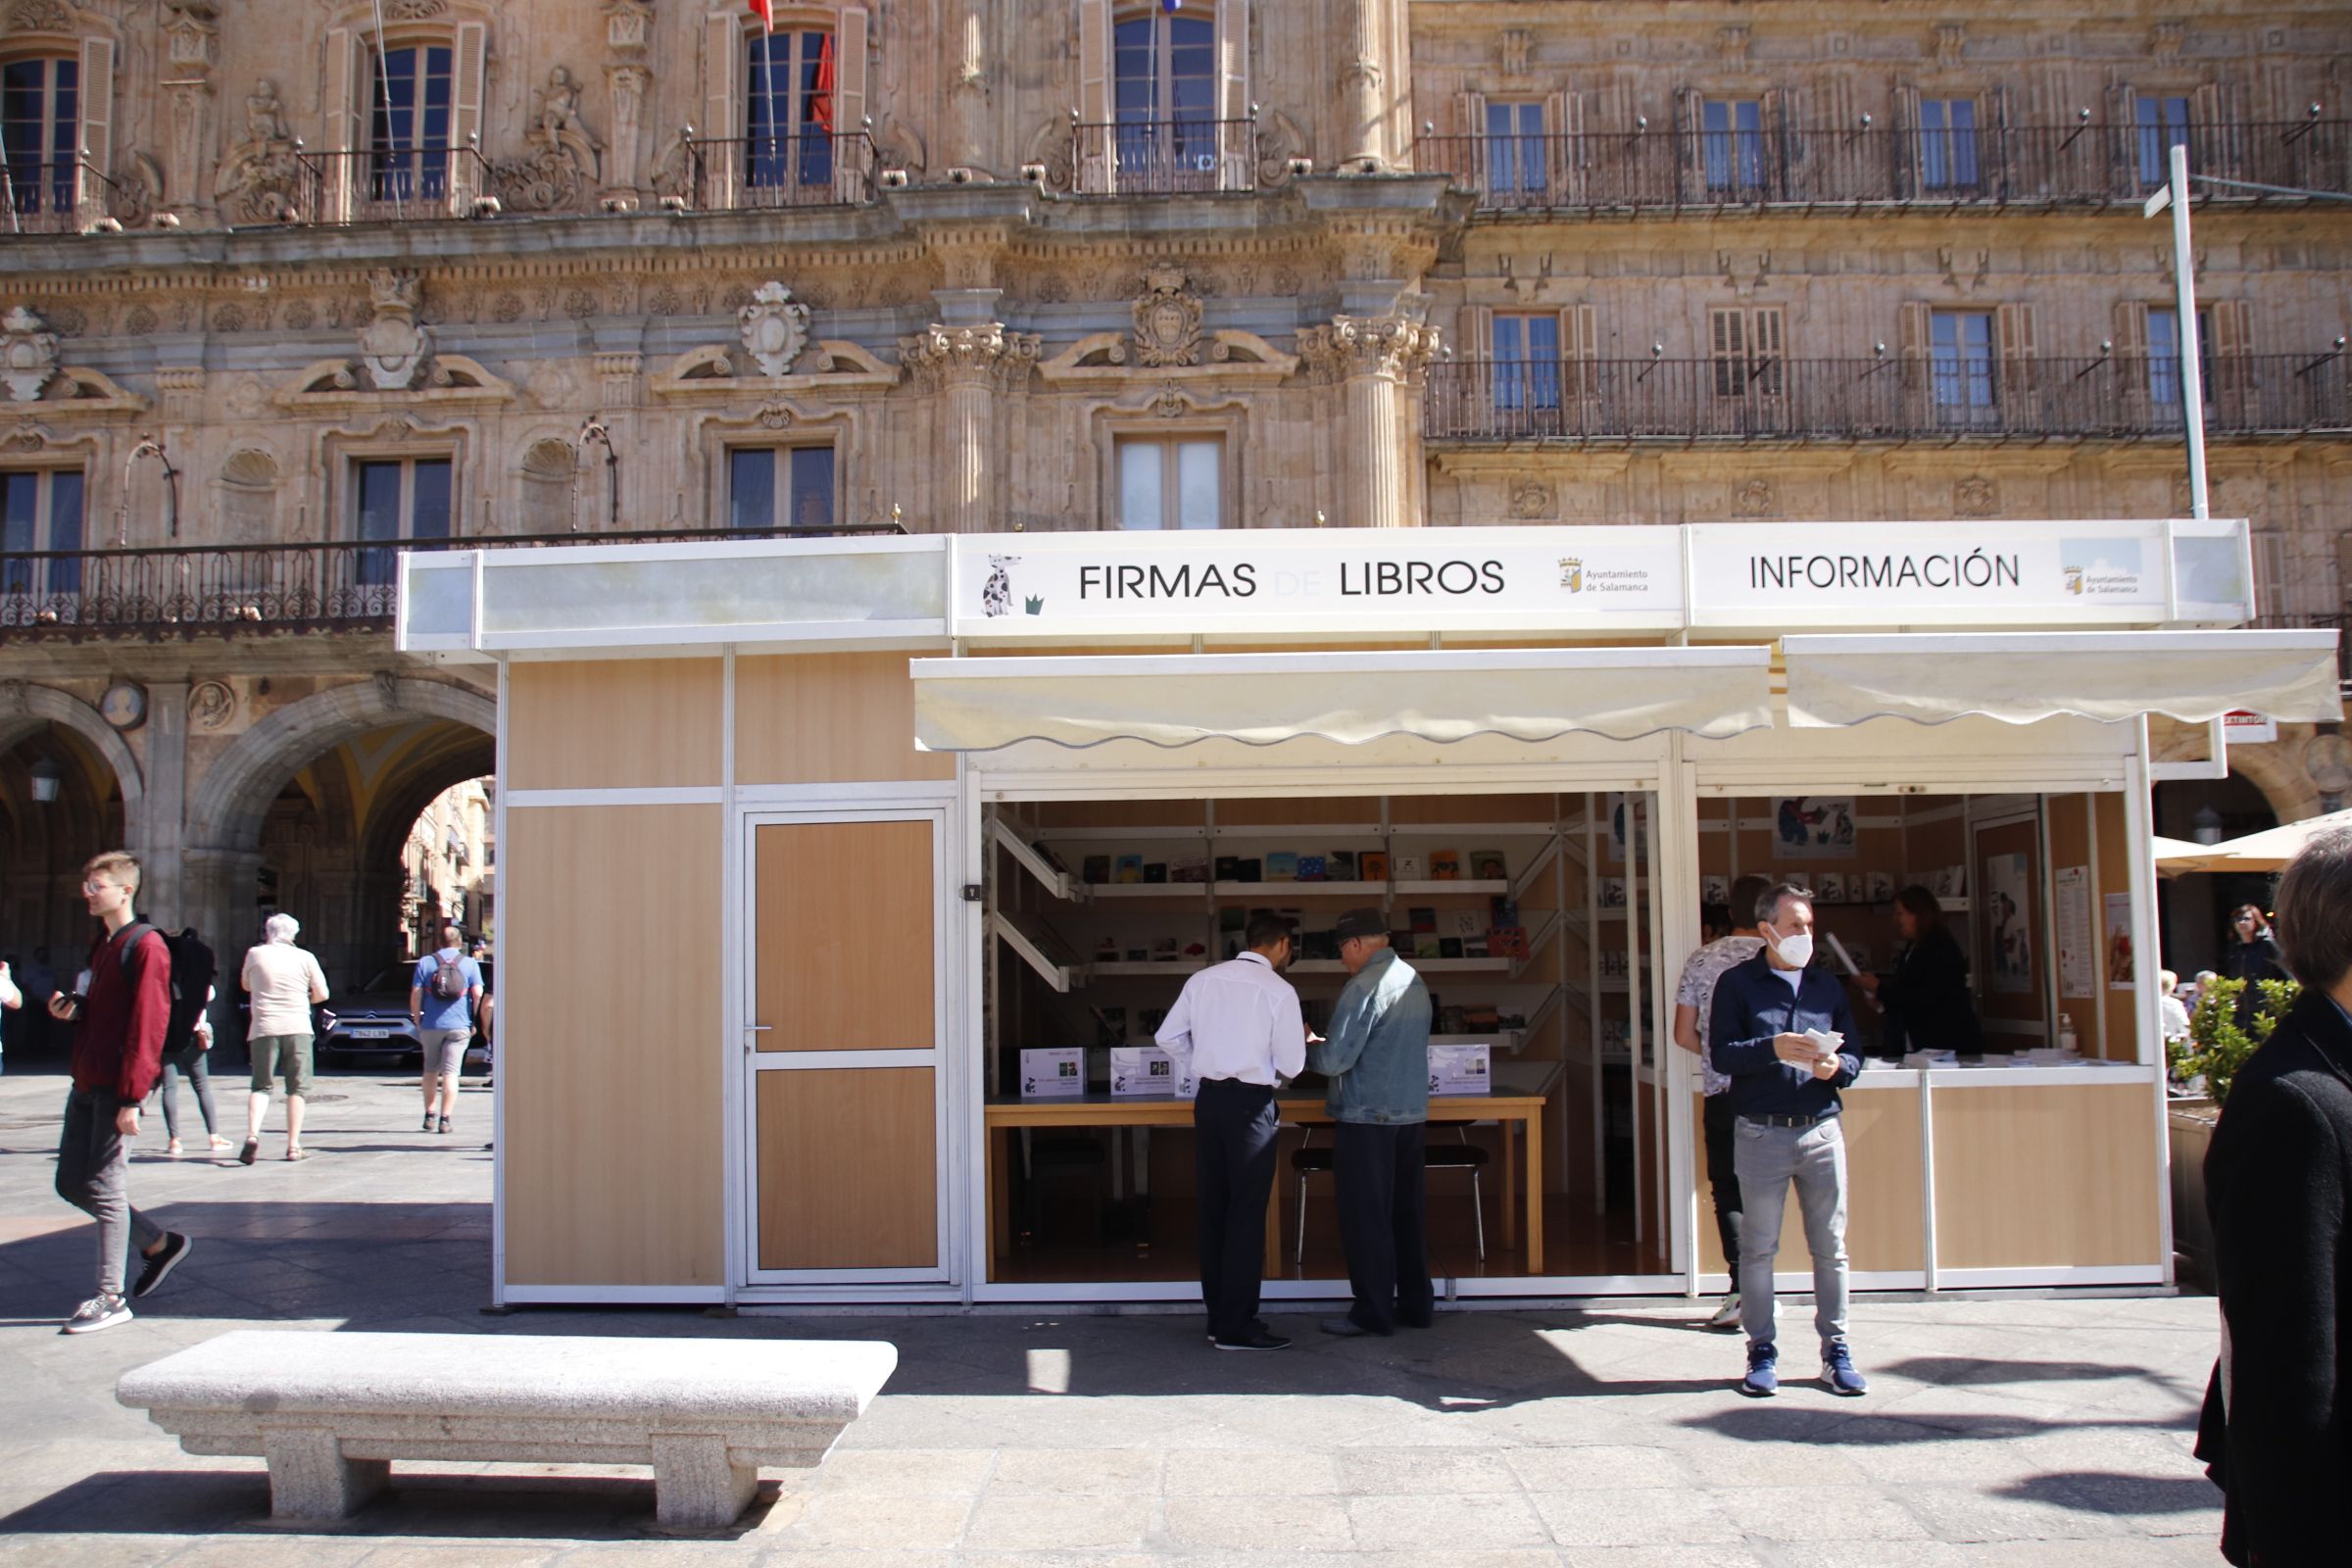 Inauguración de la Feria del Libro en la Plaza Mayor de Salamanca.